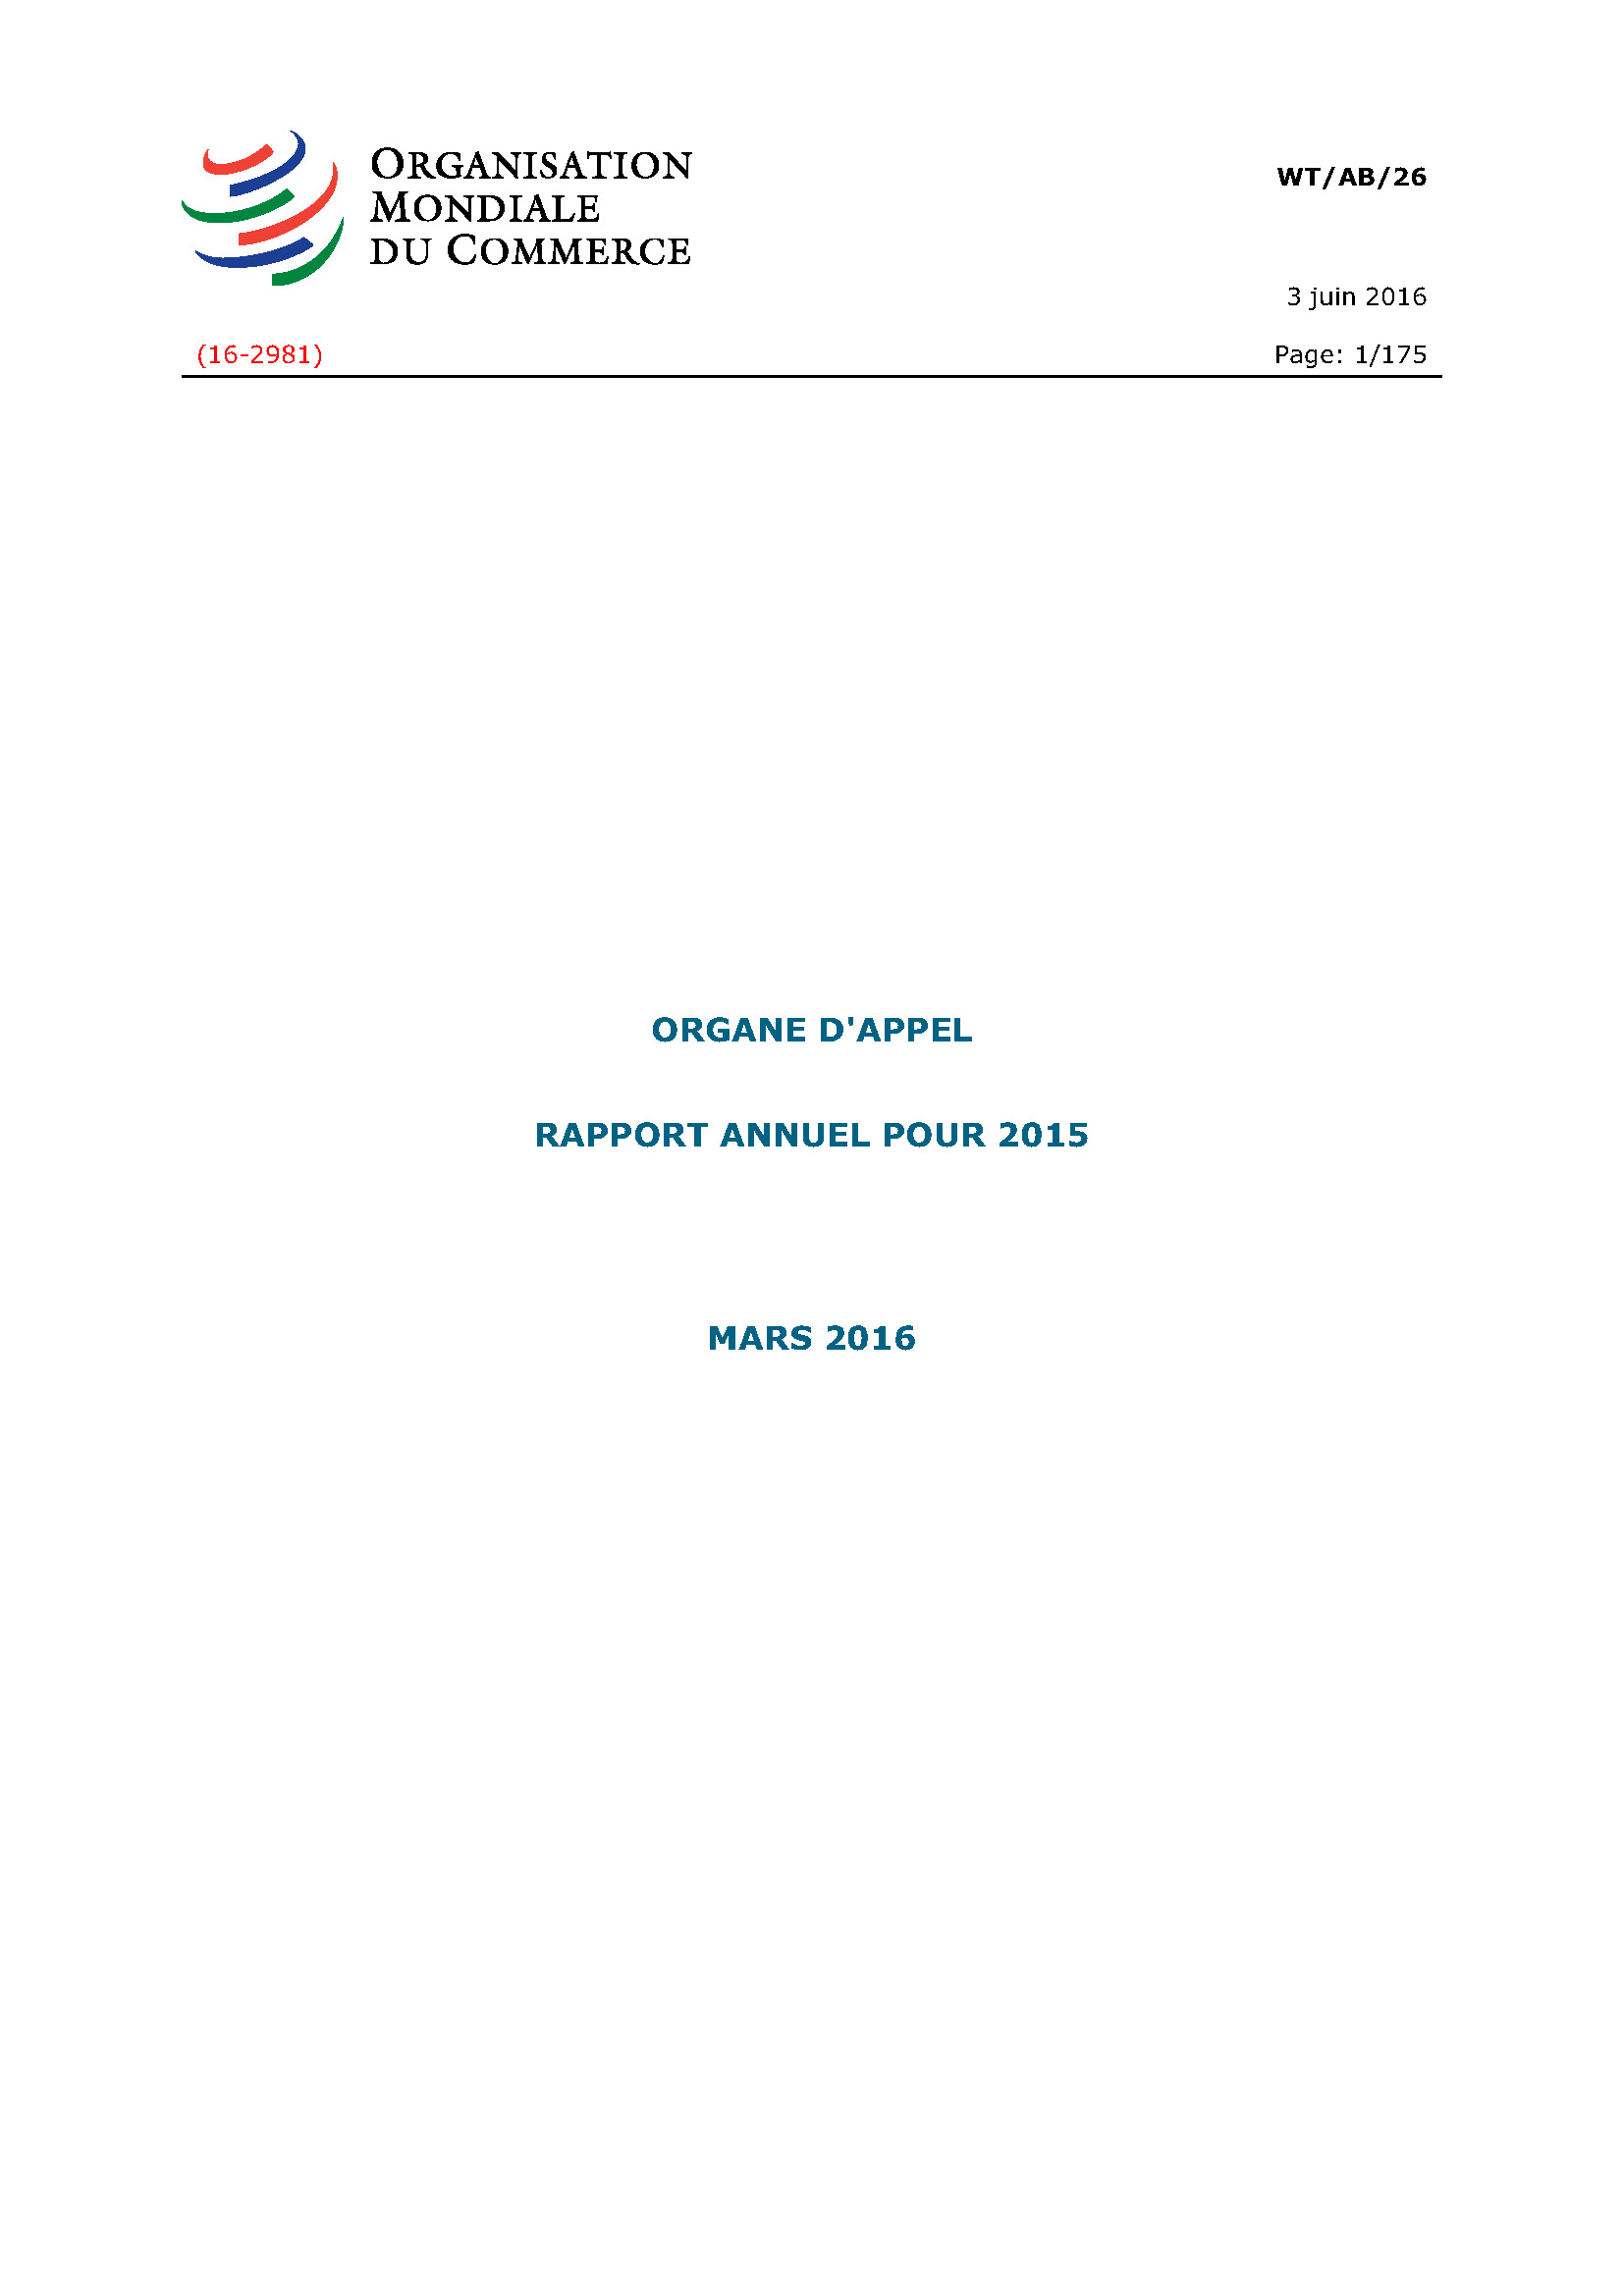 image of Rapport annuel de l’organe d’appel pour 2015